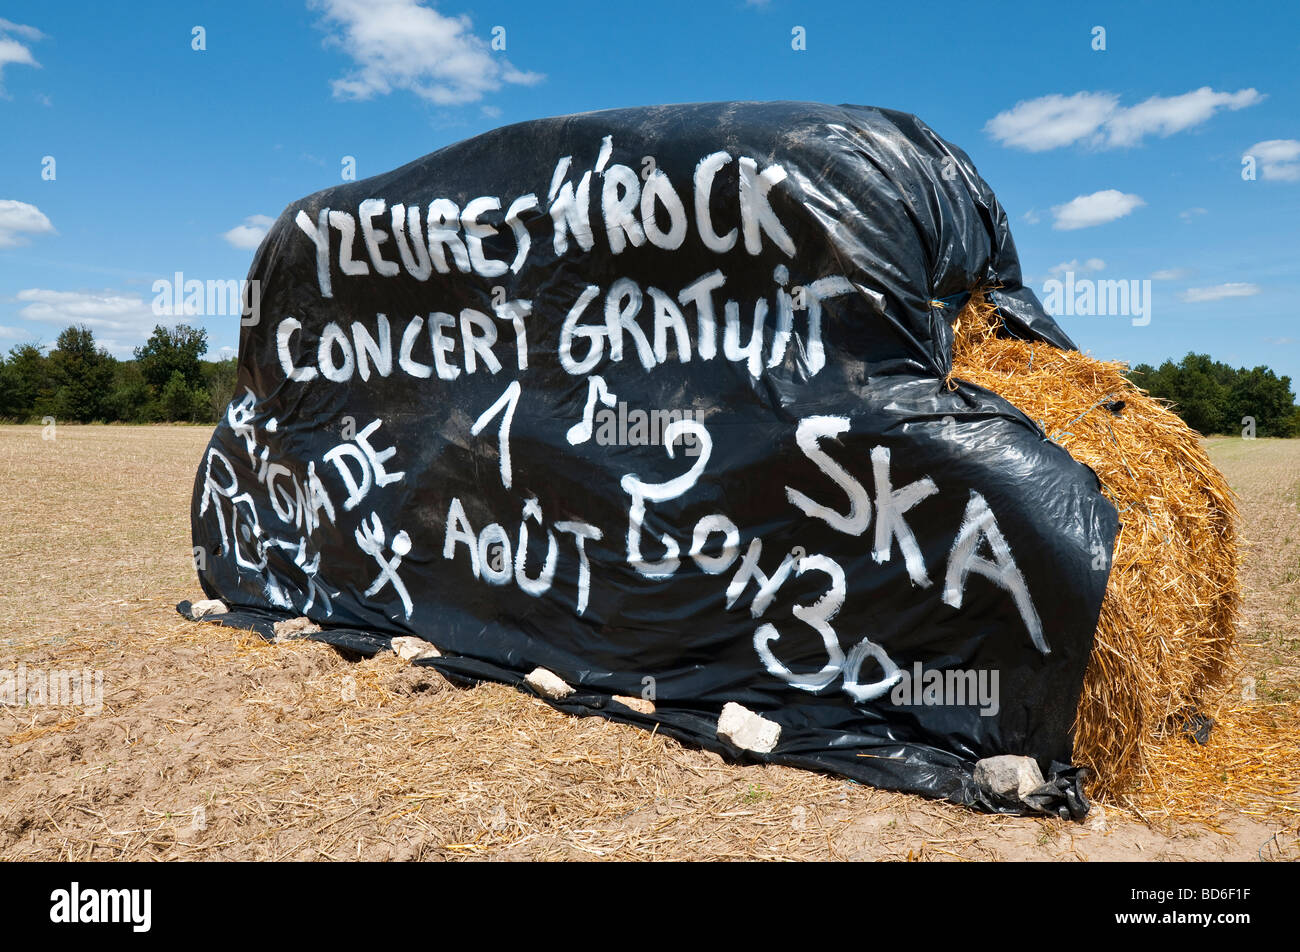 Feuille en plastique peinte à la main sur des bottes de paille la promotion  libre locales concert de rock - France Photo Stock - Alamy